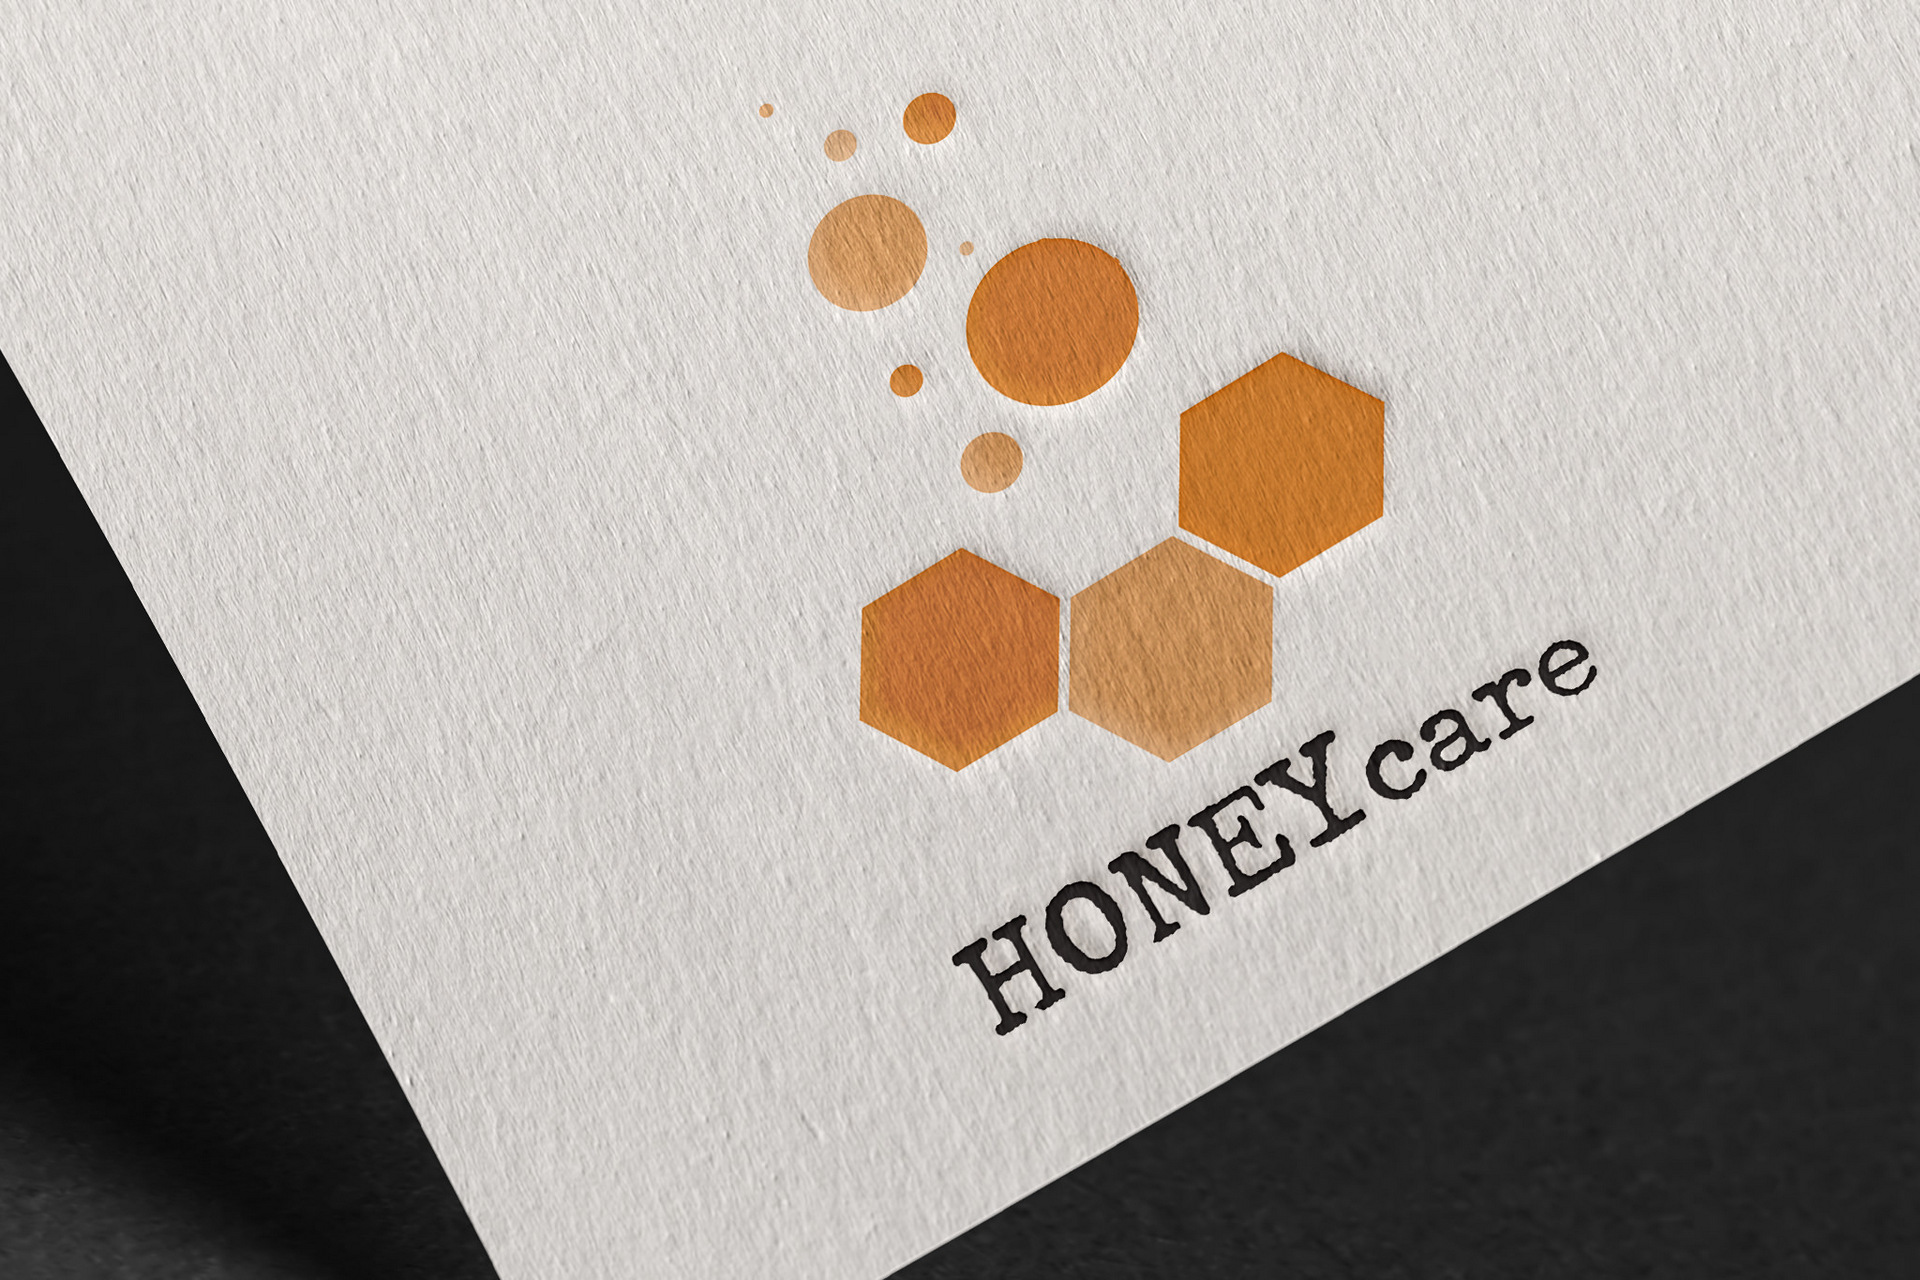 Honey care logo printed